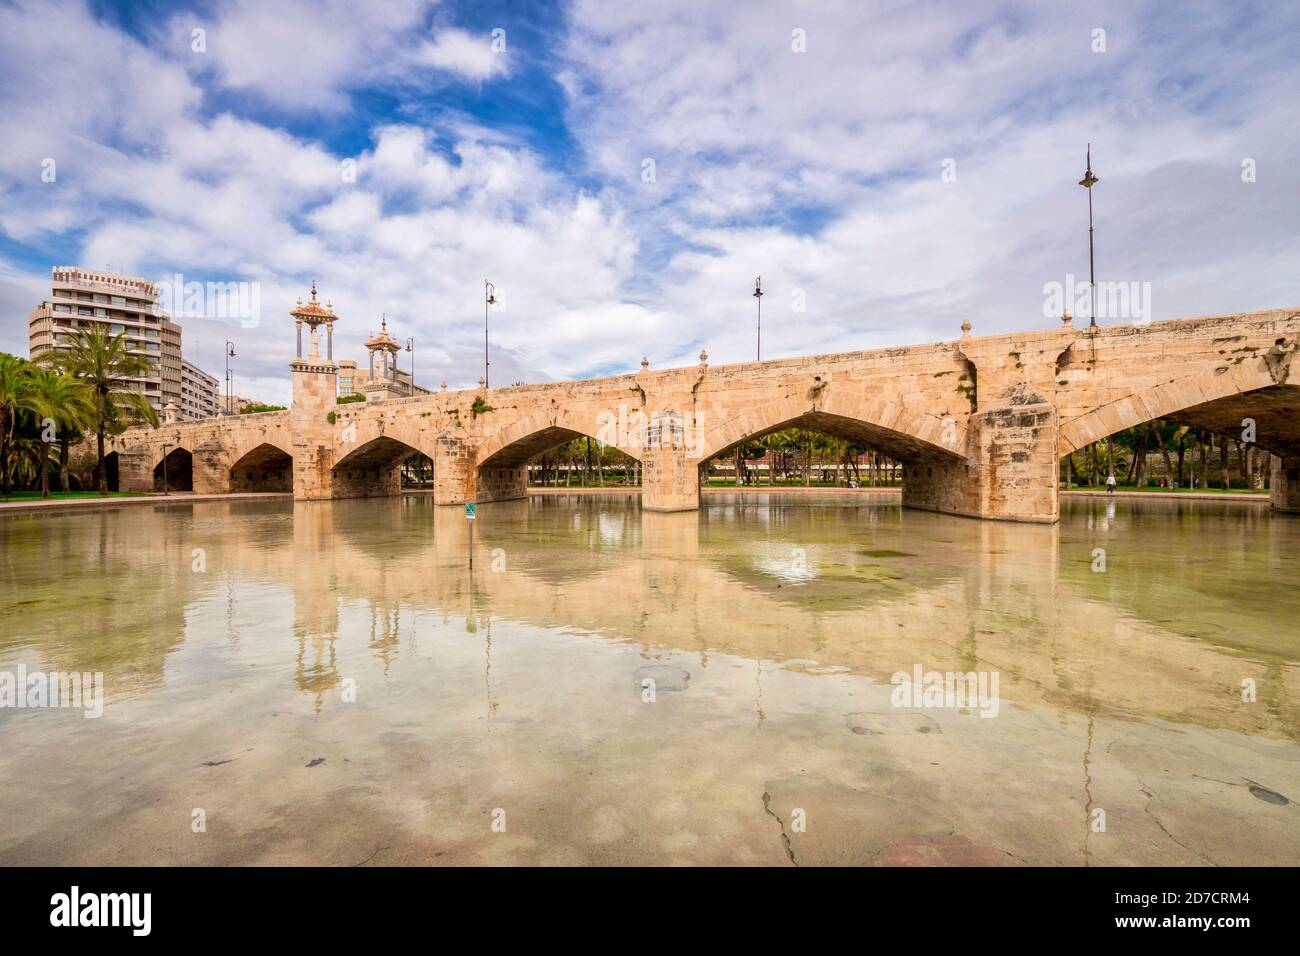 3 marzo 2020: Valencia, Spagna - Puente del Mar, un ponte storico sul corso del fiume Turia, ora parco pubblico. Foto Stock